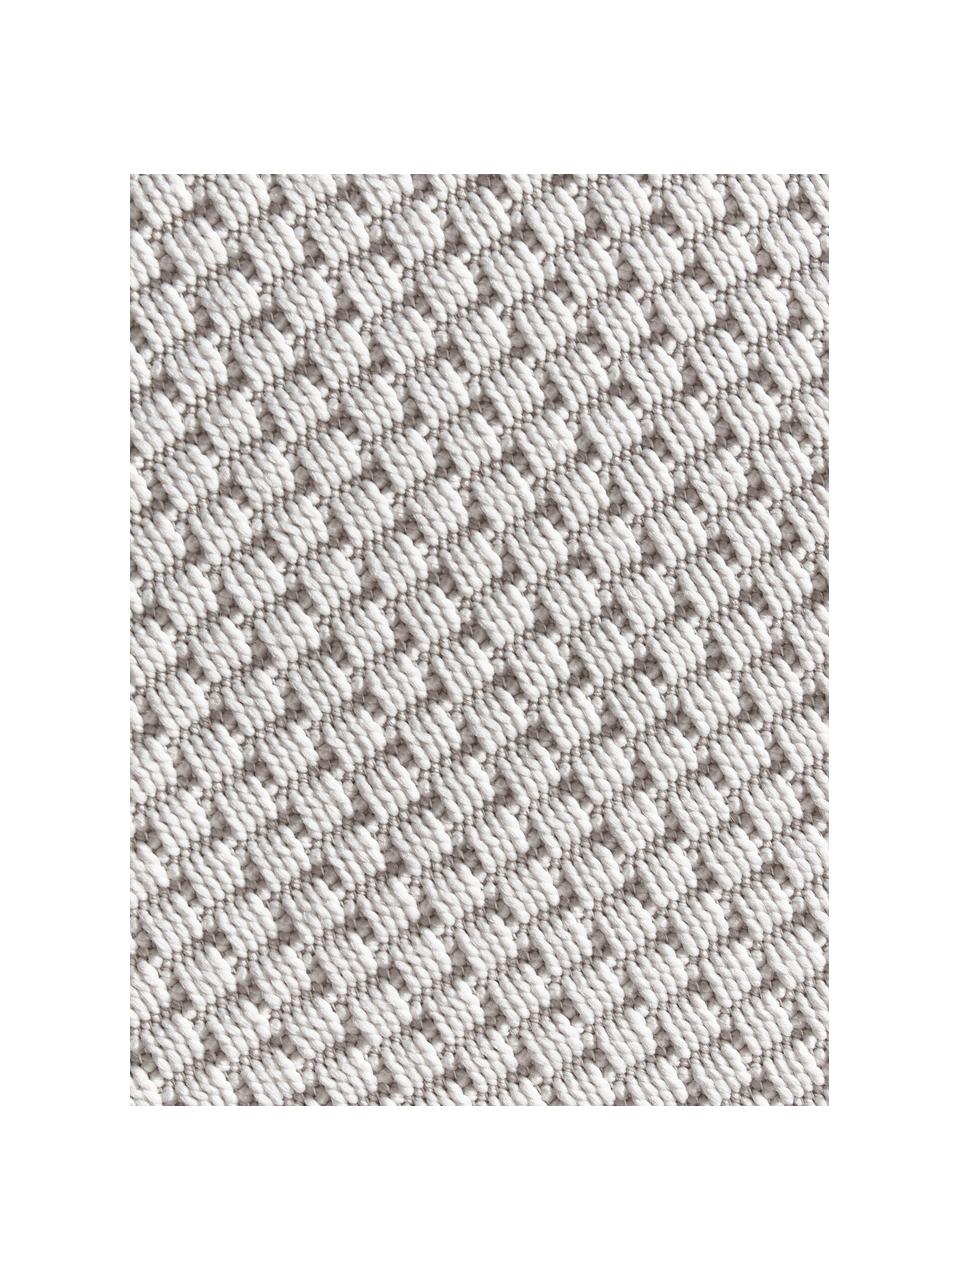 Kulatý interiérový a exteriérový koberec Toronto, 100 % polypropylen, Krémově bílá, Ø 120 cm (velikost S)